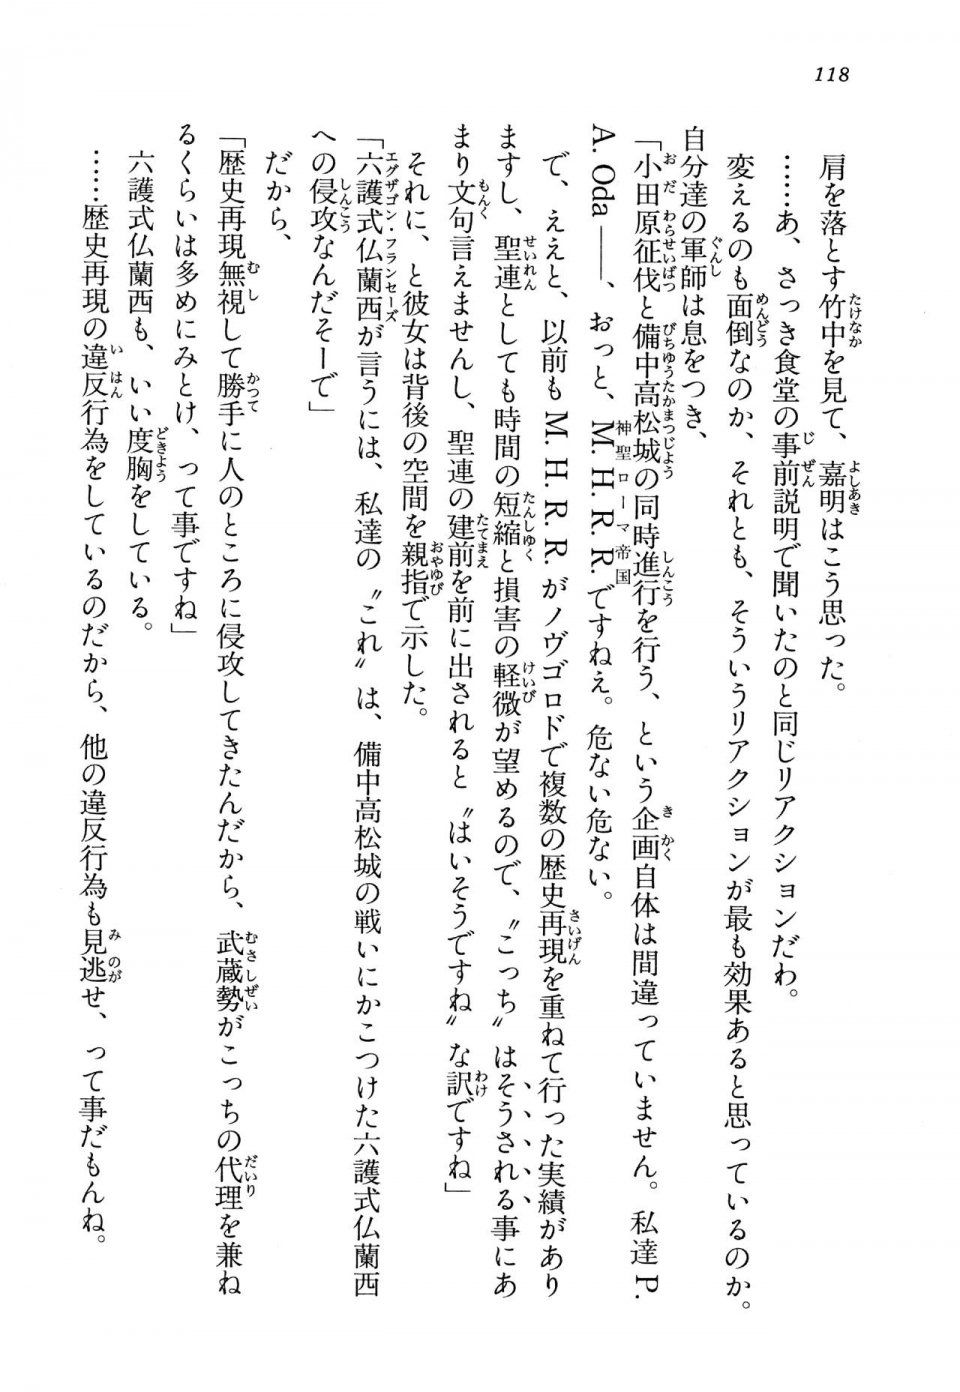 Kyoukai Senjou no Horizon LN Vol 13(6A) - Photo #118